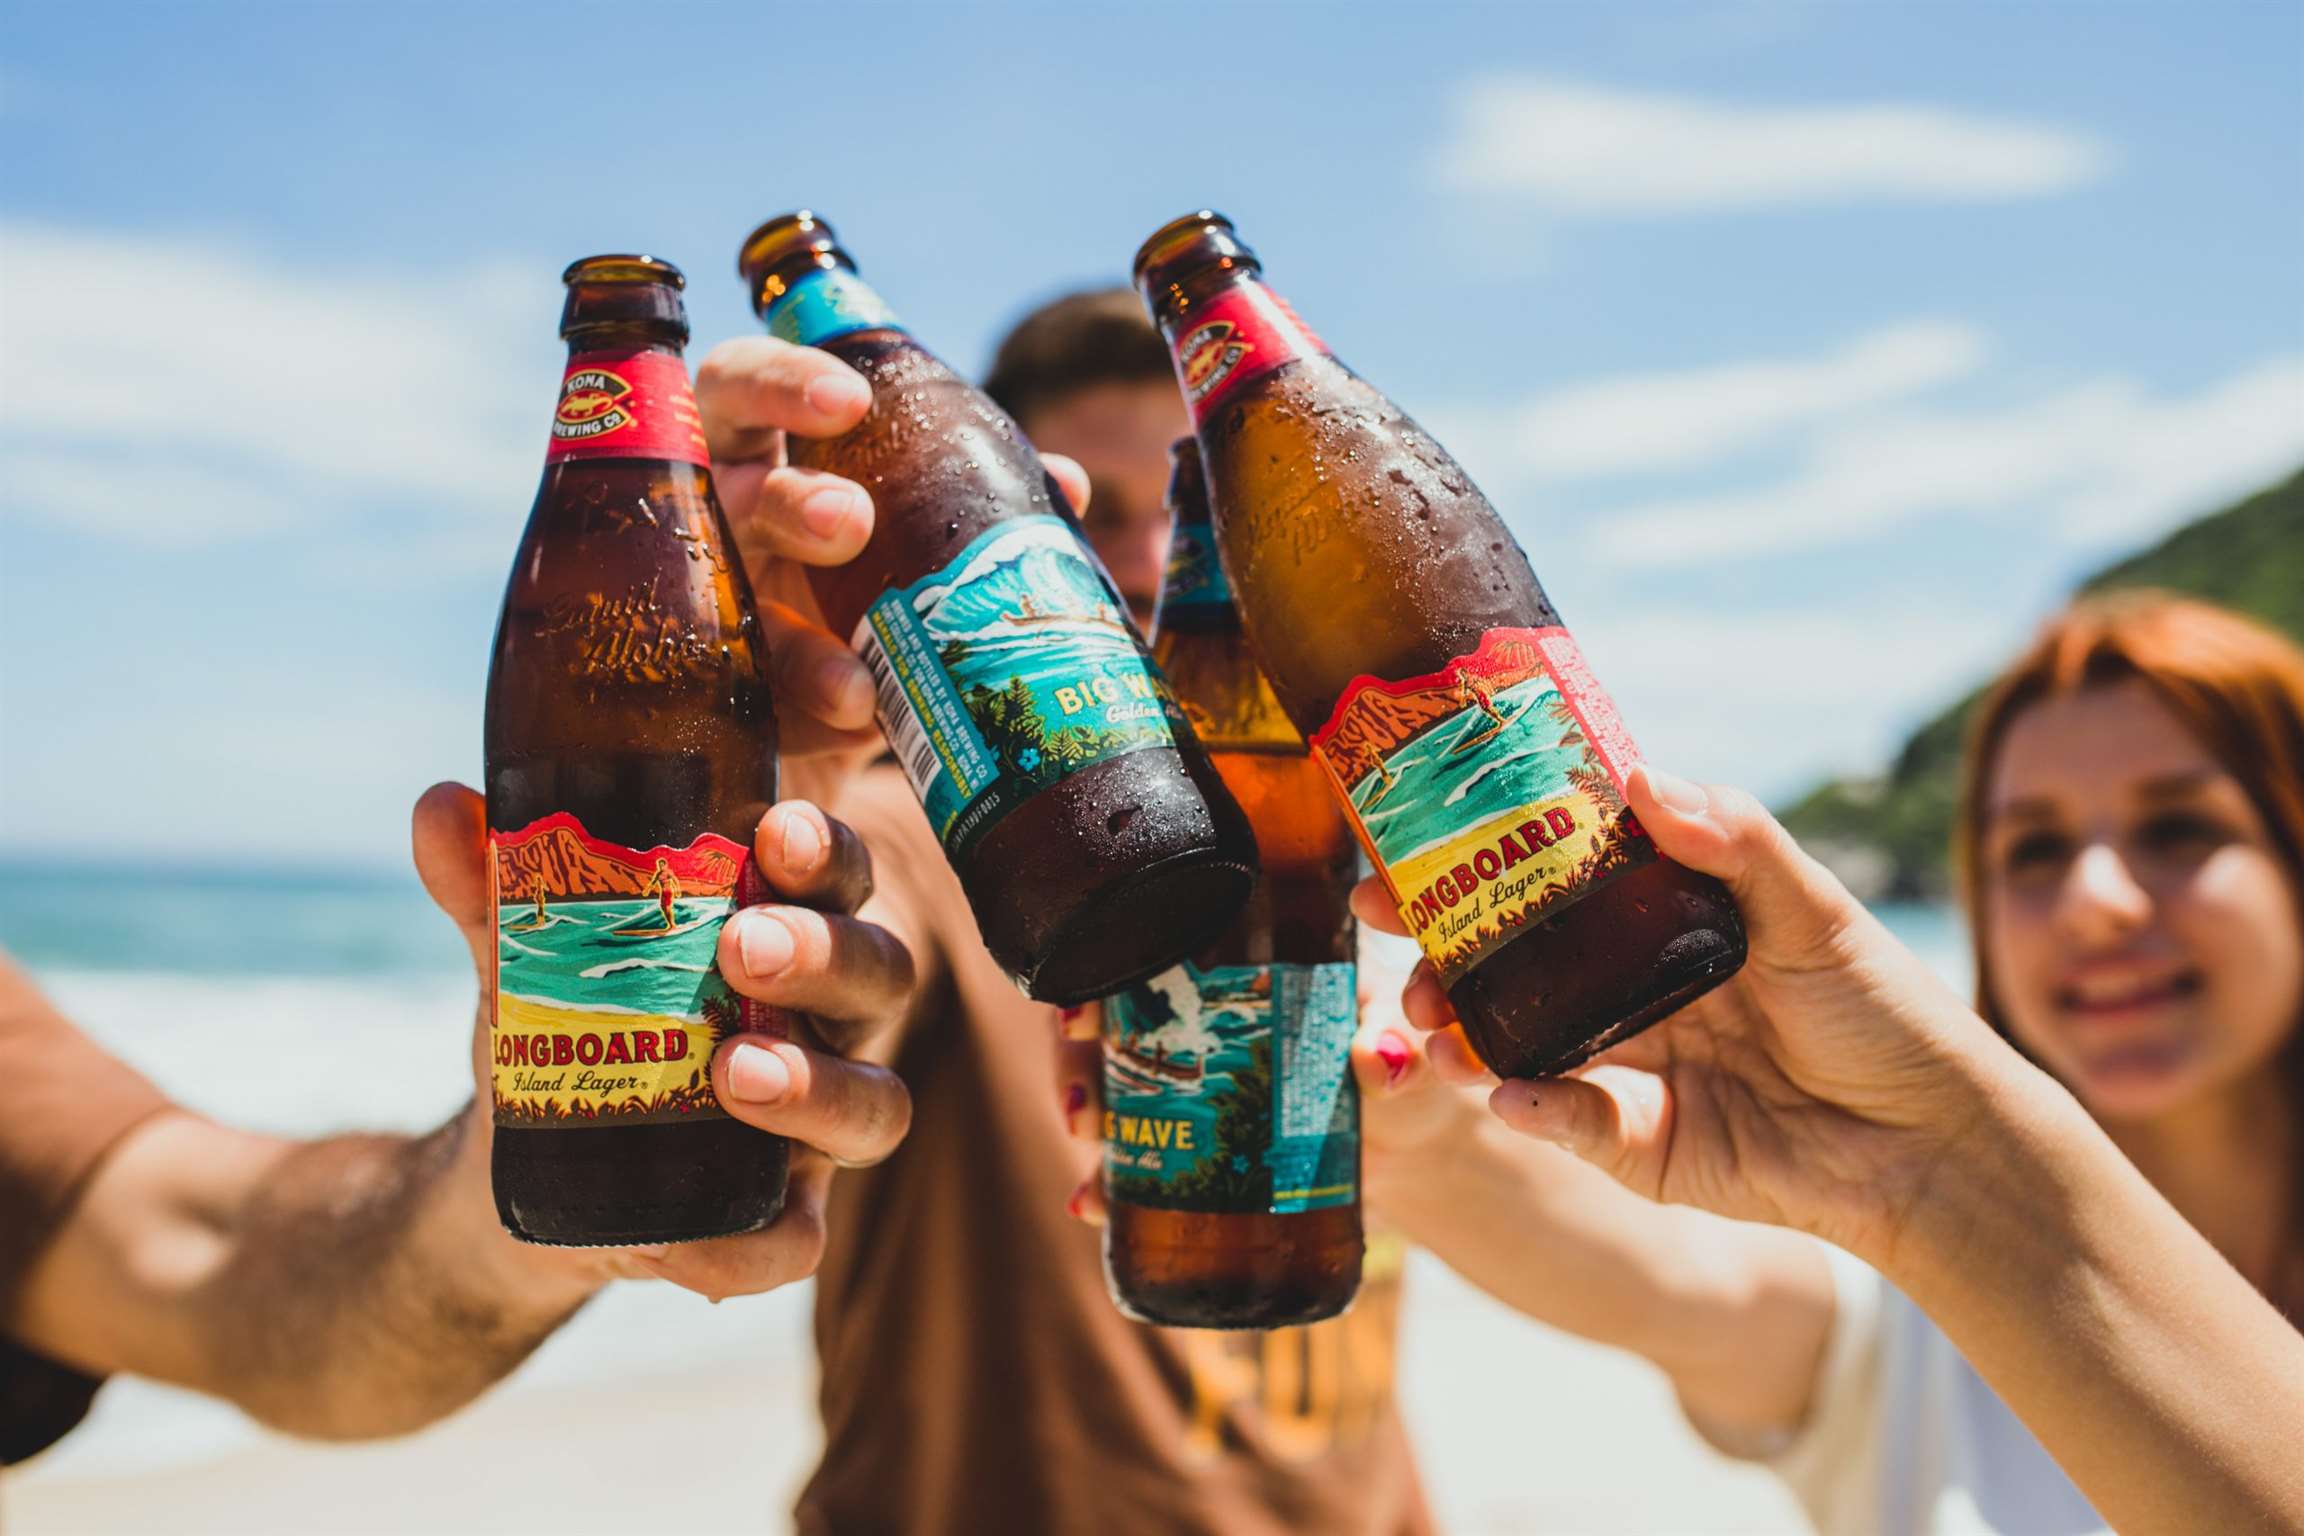 Evento da Cervejaria Kona reúne amantes de praia em uma tarde repleta de atrações